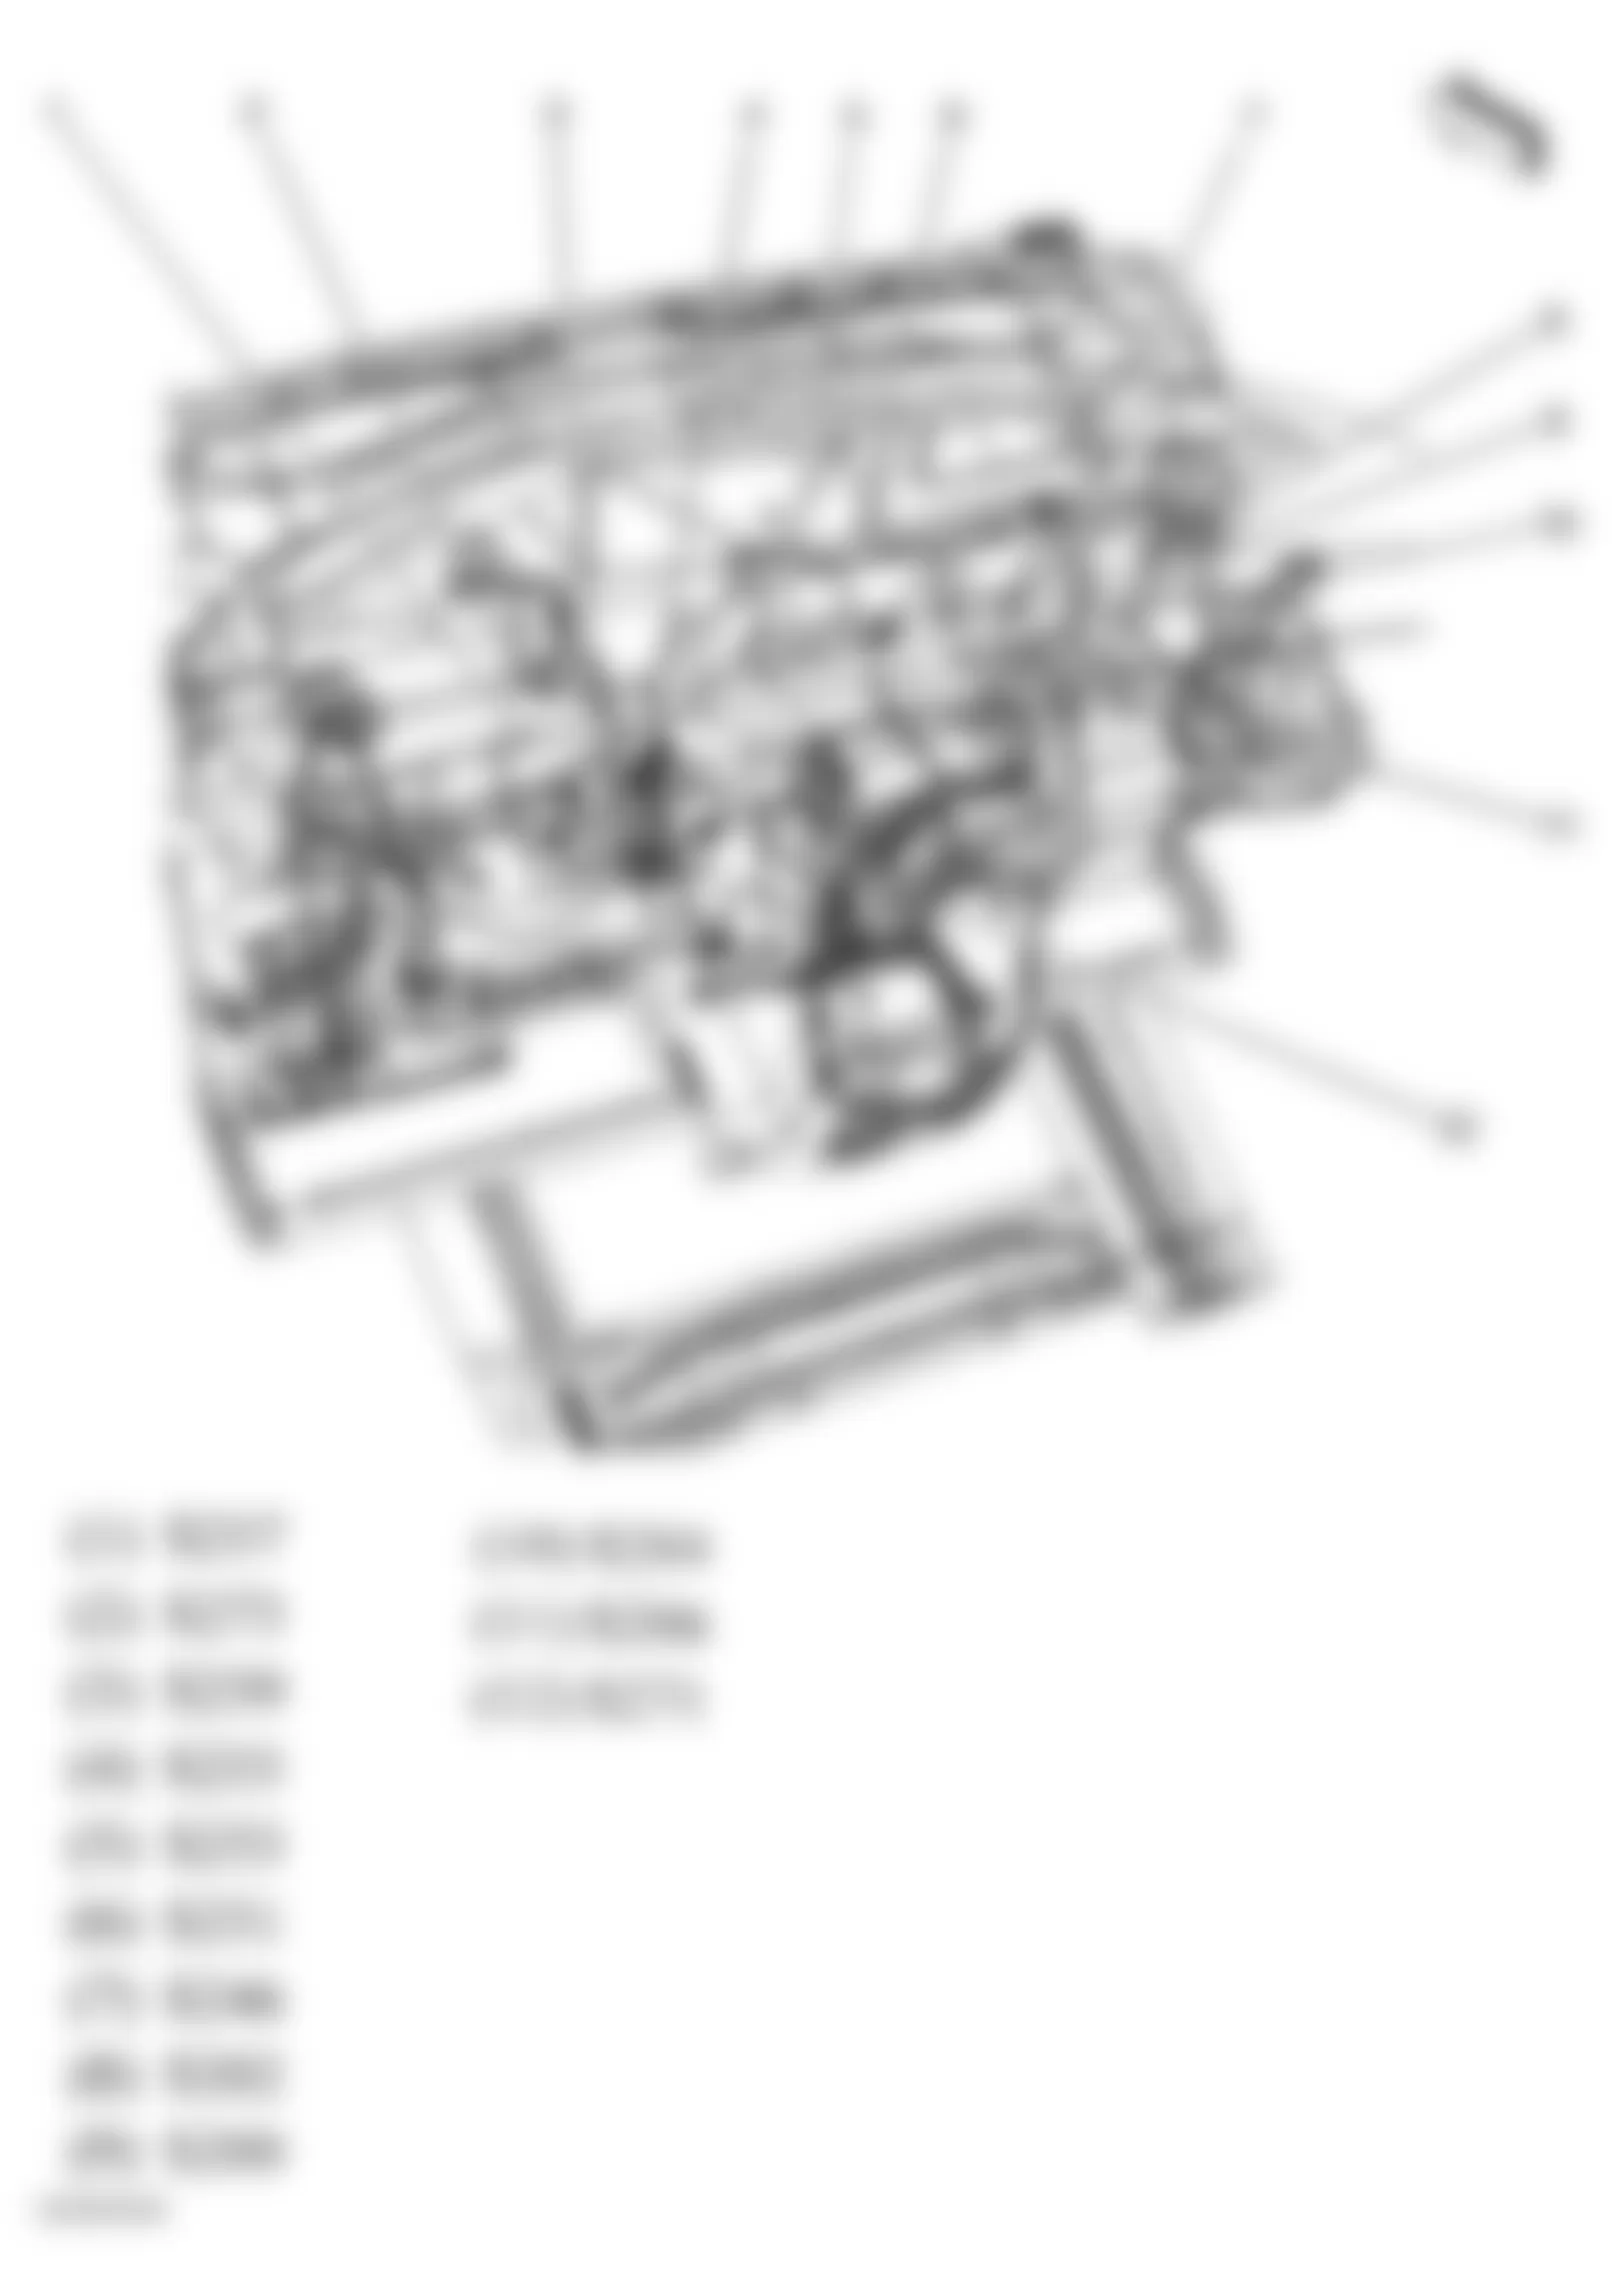 Buick Terraza CXL 2005 - Component Locations -  Dash